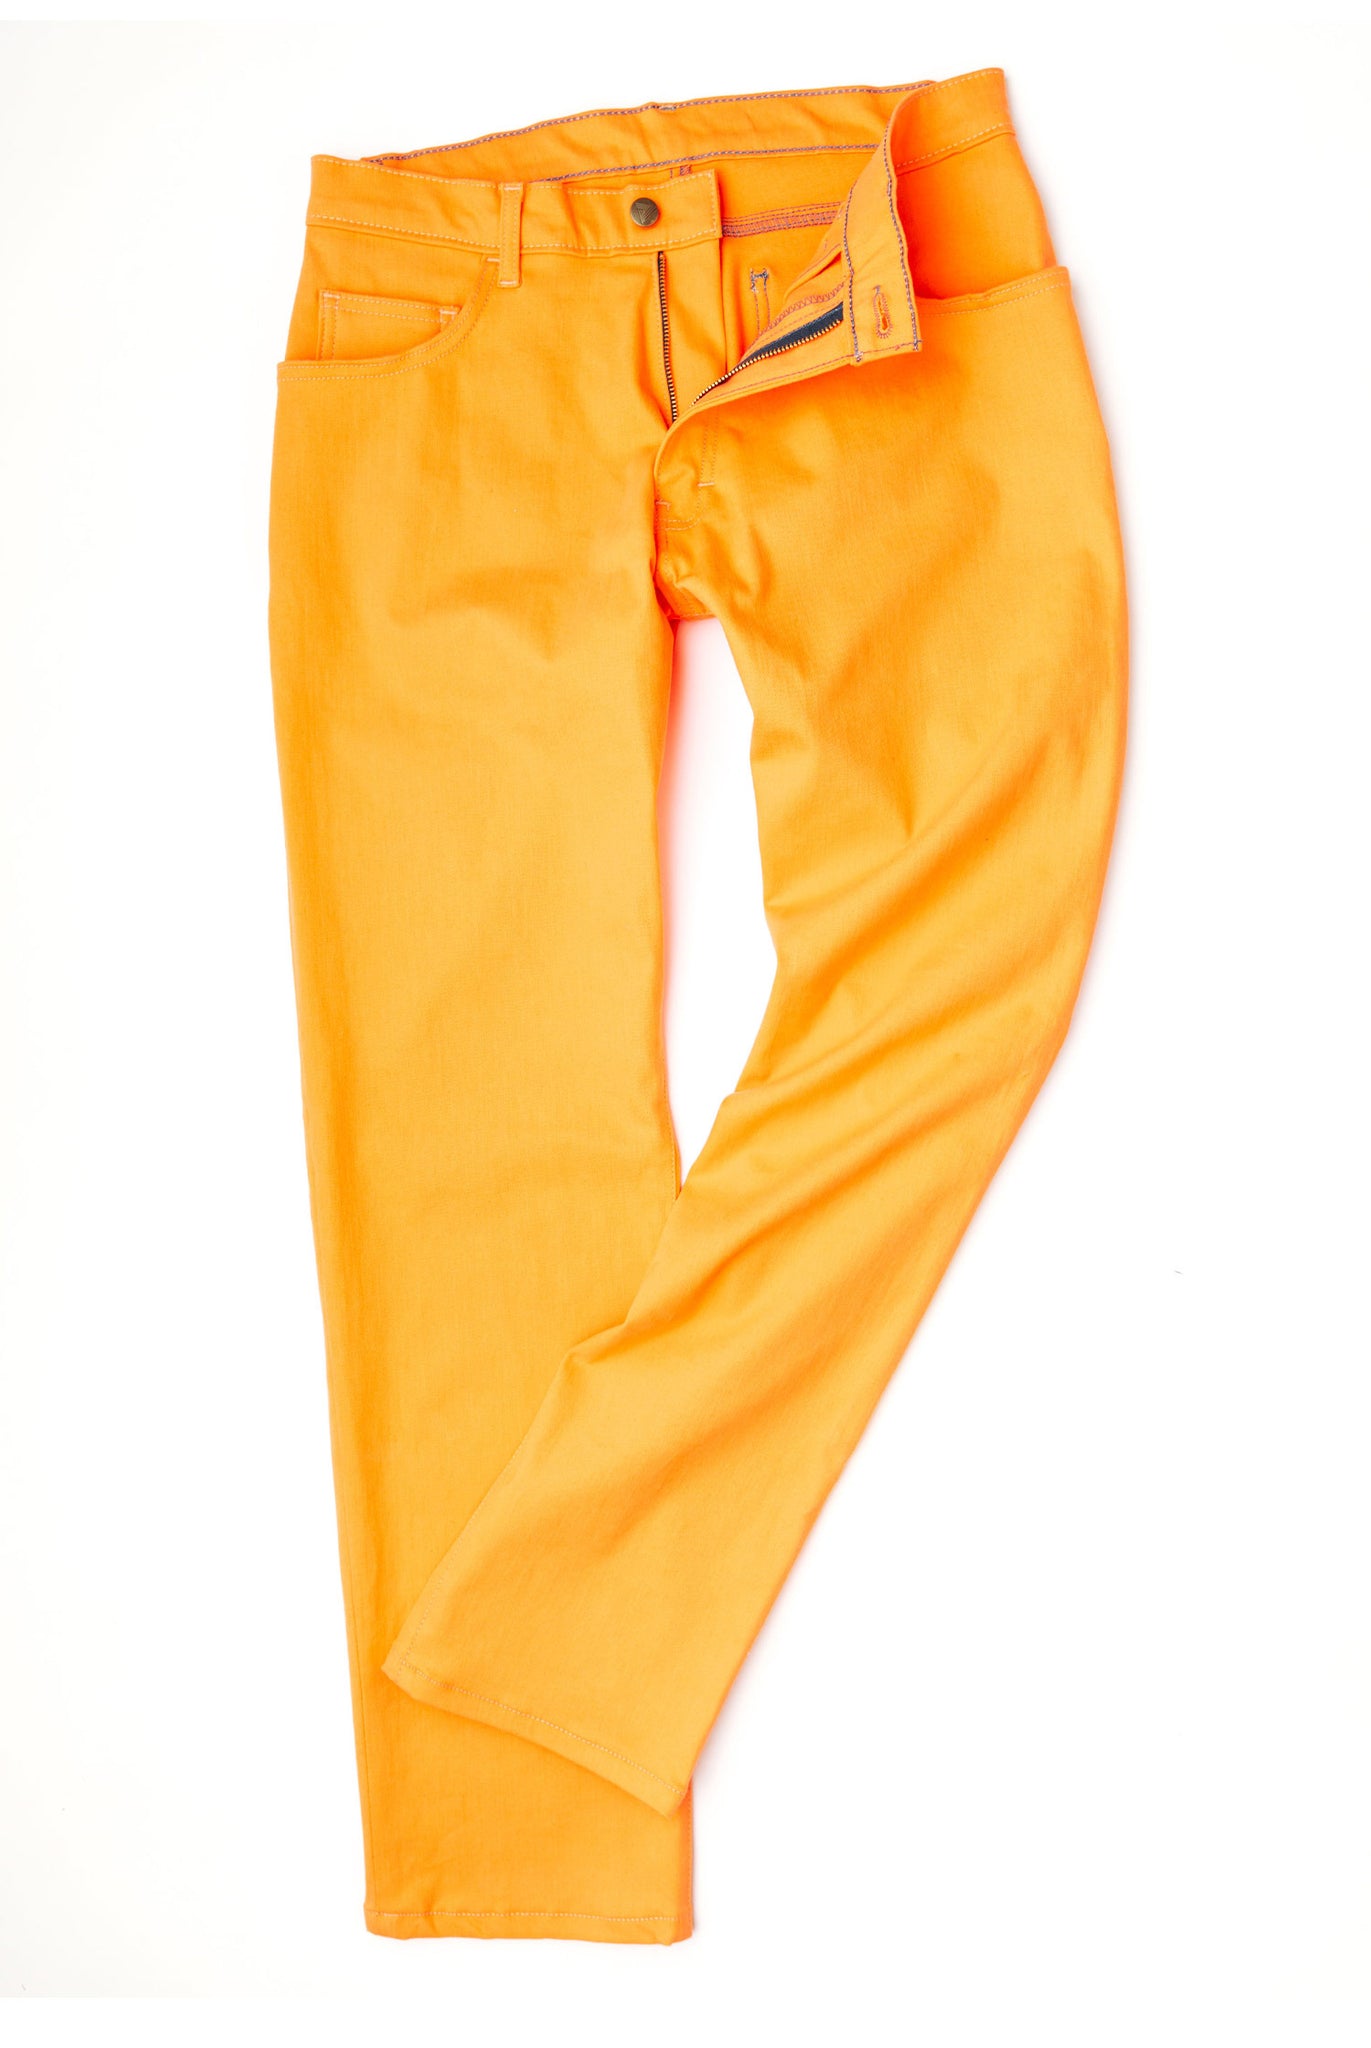 PREME Skinny Cargo Stretch Jean - Men's Jeans in Indigo Navy Orange | Buckle